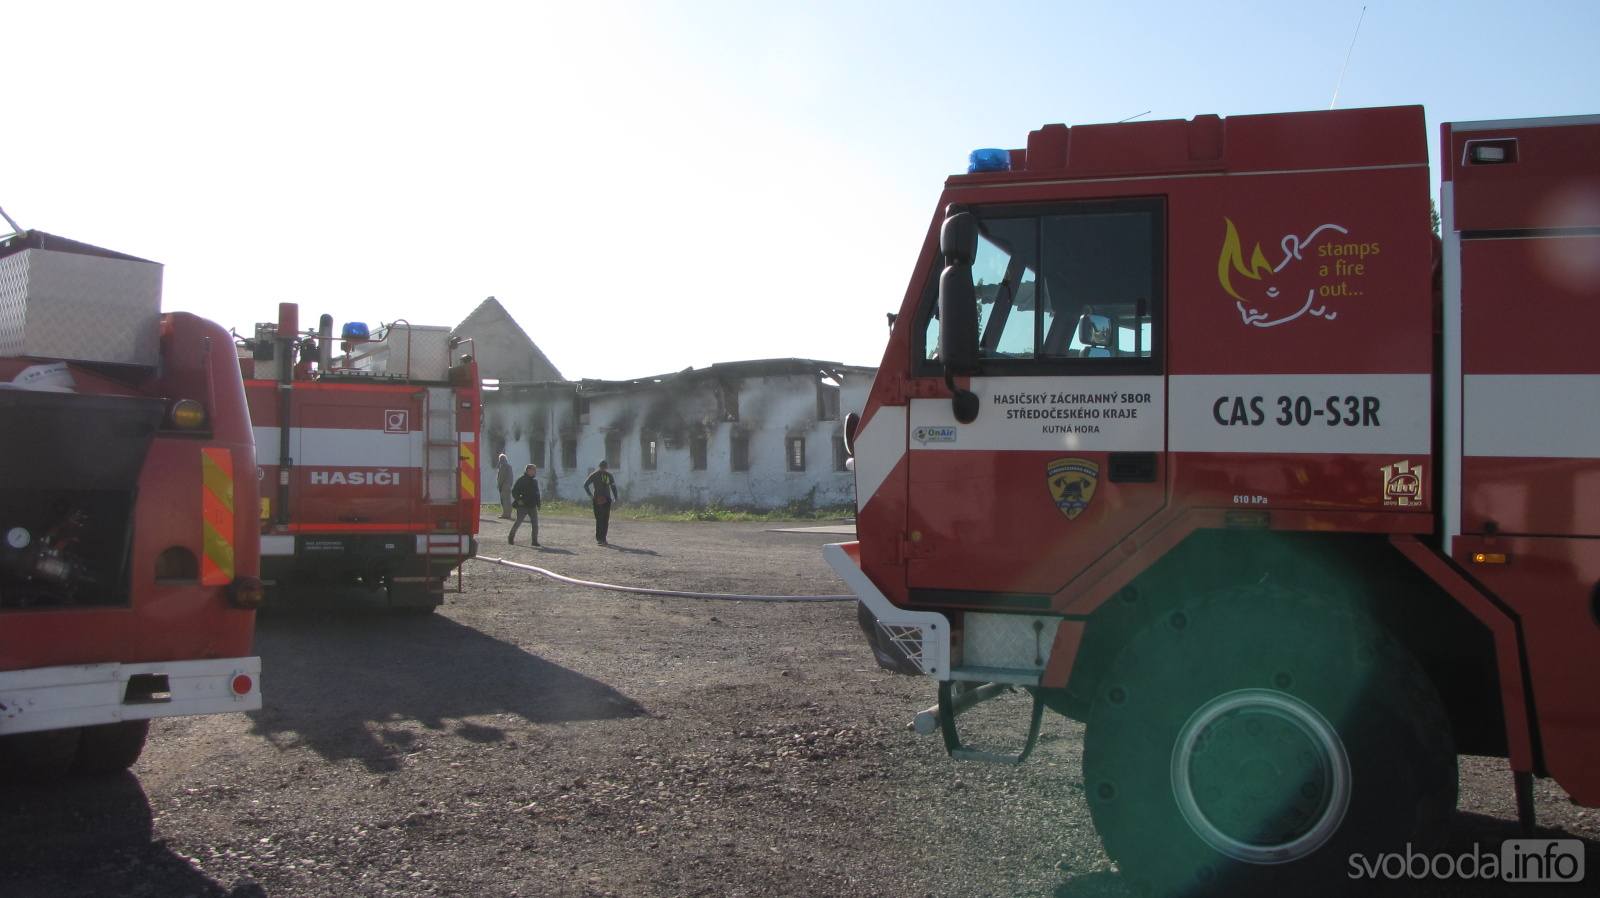 Foto: Požár skladu ve Svaté Kateřině způsobil škodu za 2,5 milionu korun